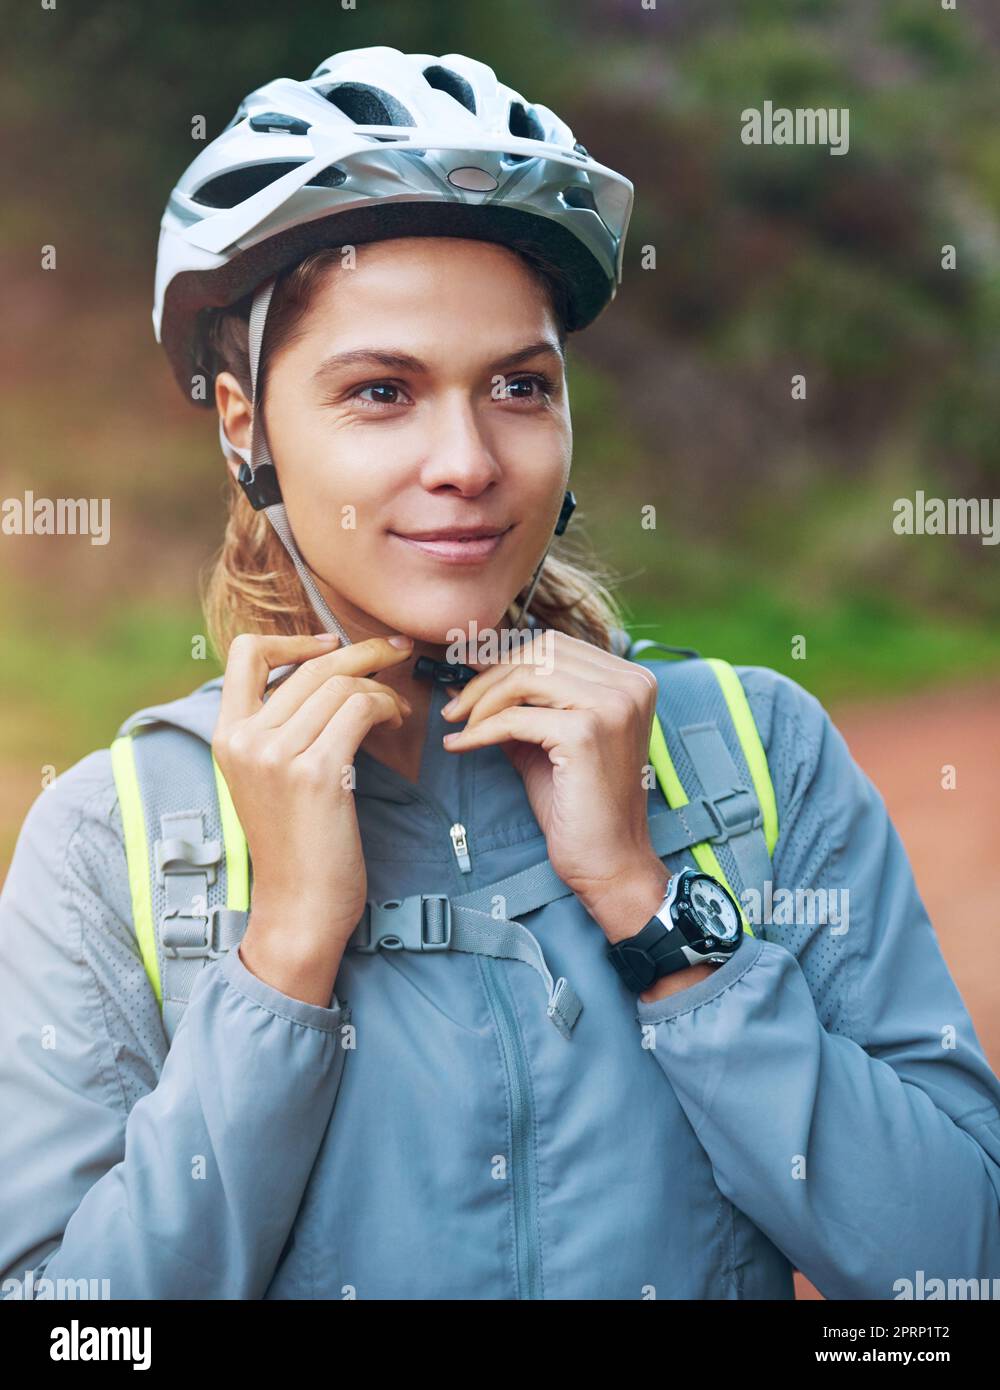 Sie liebt unwegsames Gelände. Eine weibliche Mountainbiker, die am frühen Morgen eine Fahrt macht. Stockfoto